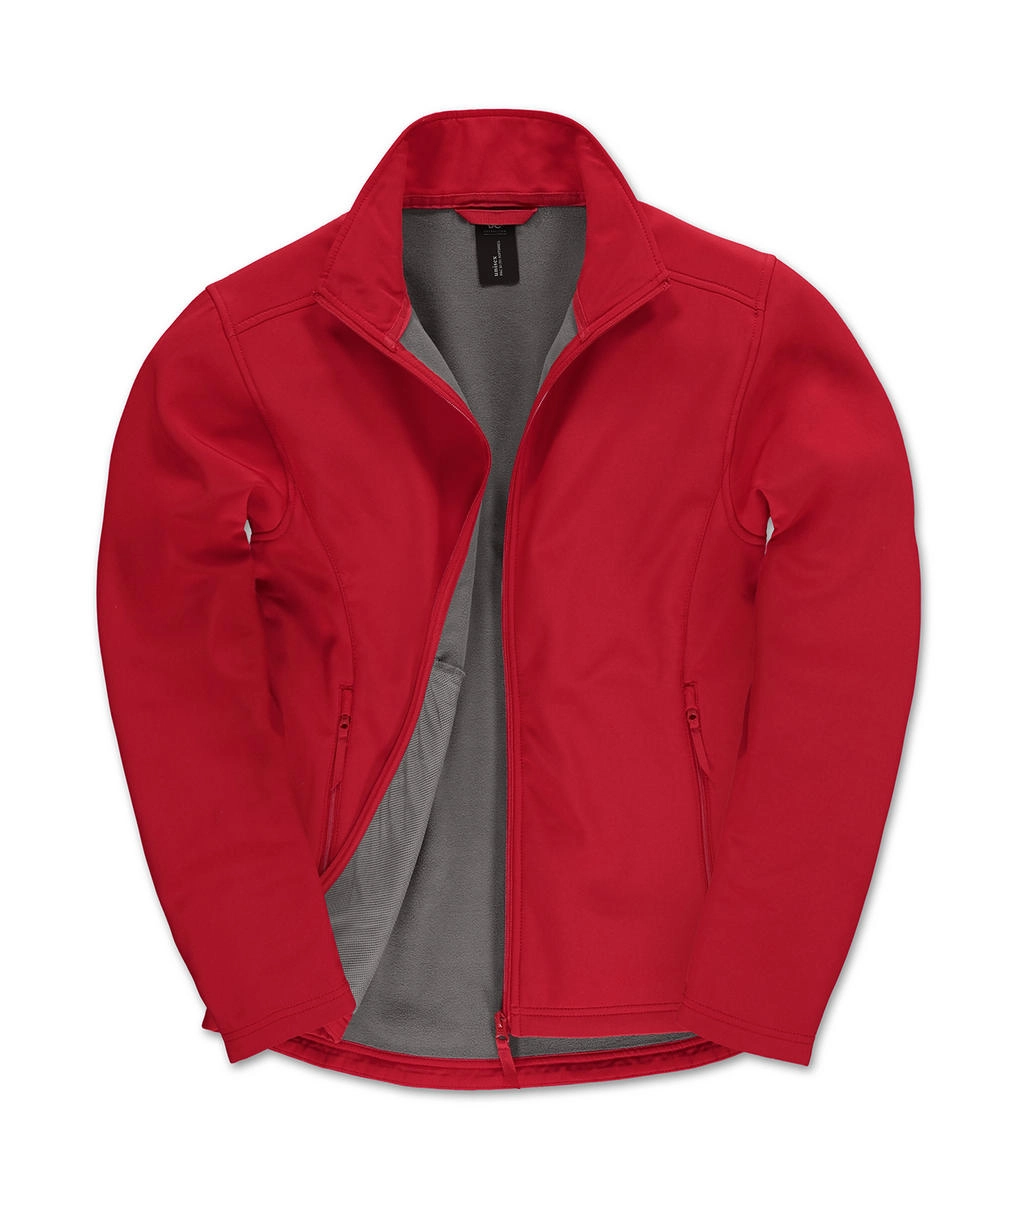 ID.701 Softshell Jacket zum Besticken und Bedrucken in der Farbe Red/Warm Grey mit Ihren Logo, Schriftzug oder Motiv.